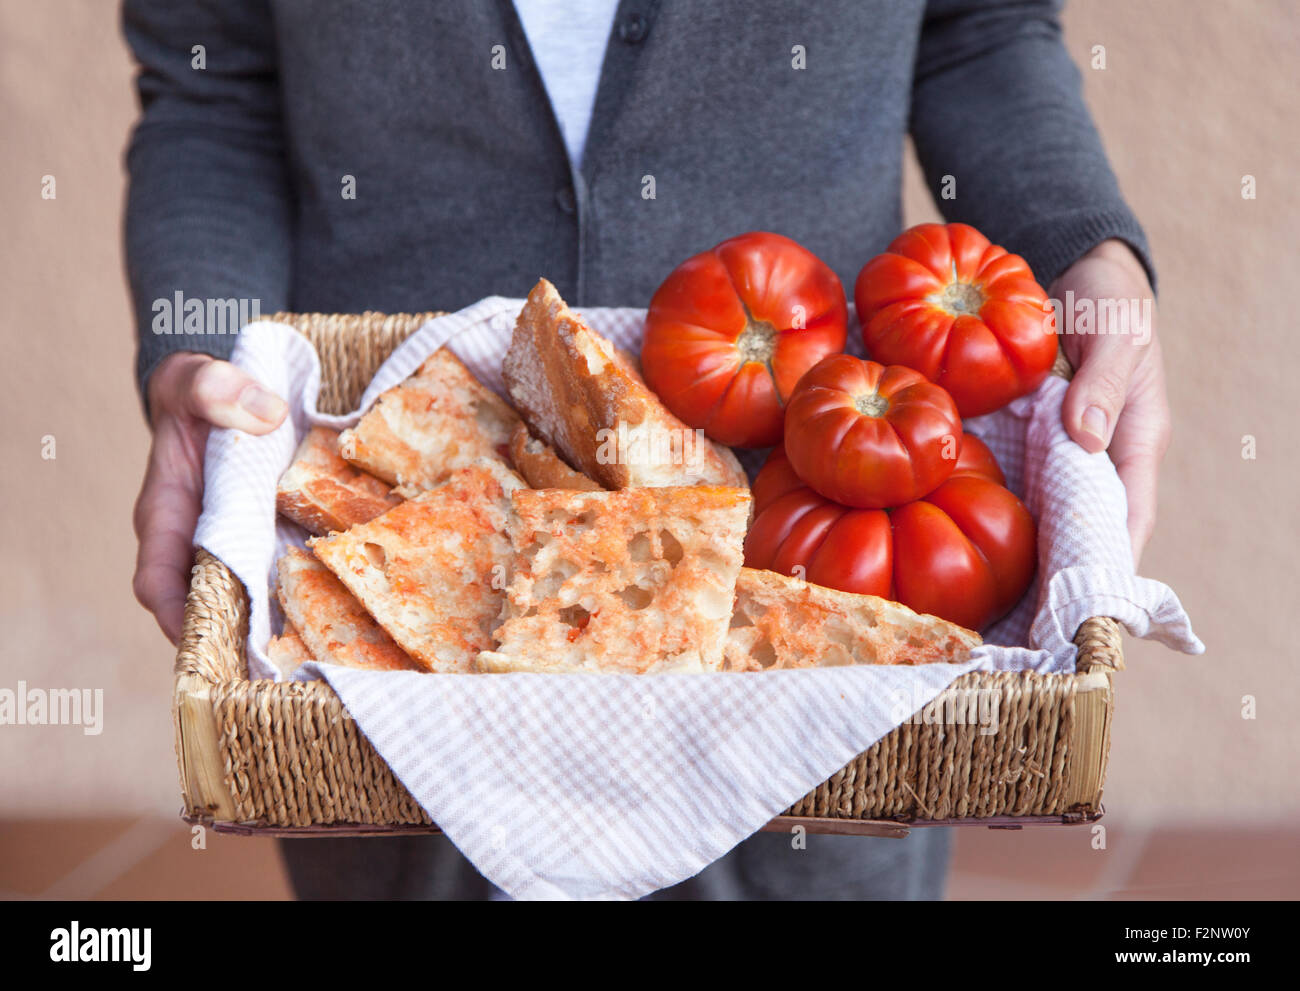 Jeune femme propose une cuisine catalane 'Pa amb tomàquet' (pain à la tomate) qui se compose de pain avec tomate frotté sur et Banque D'Images